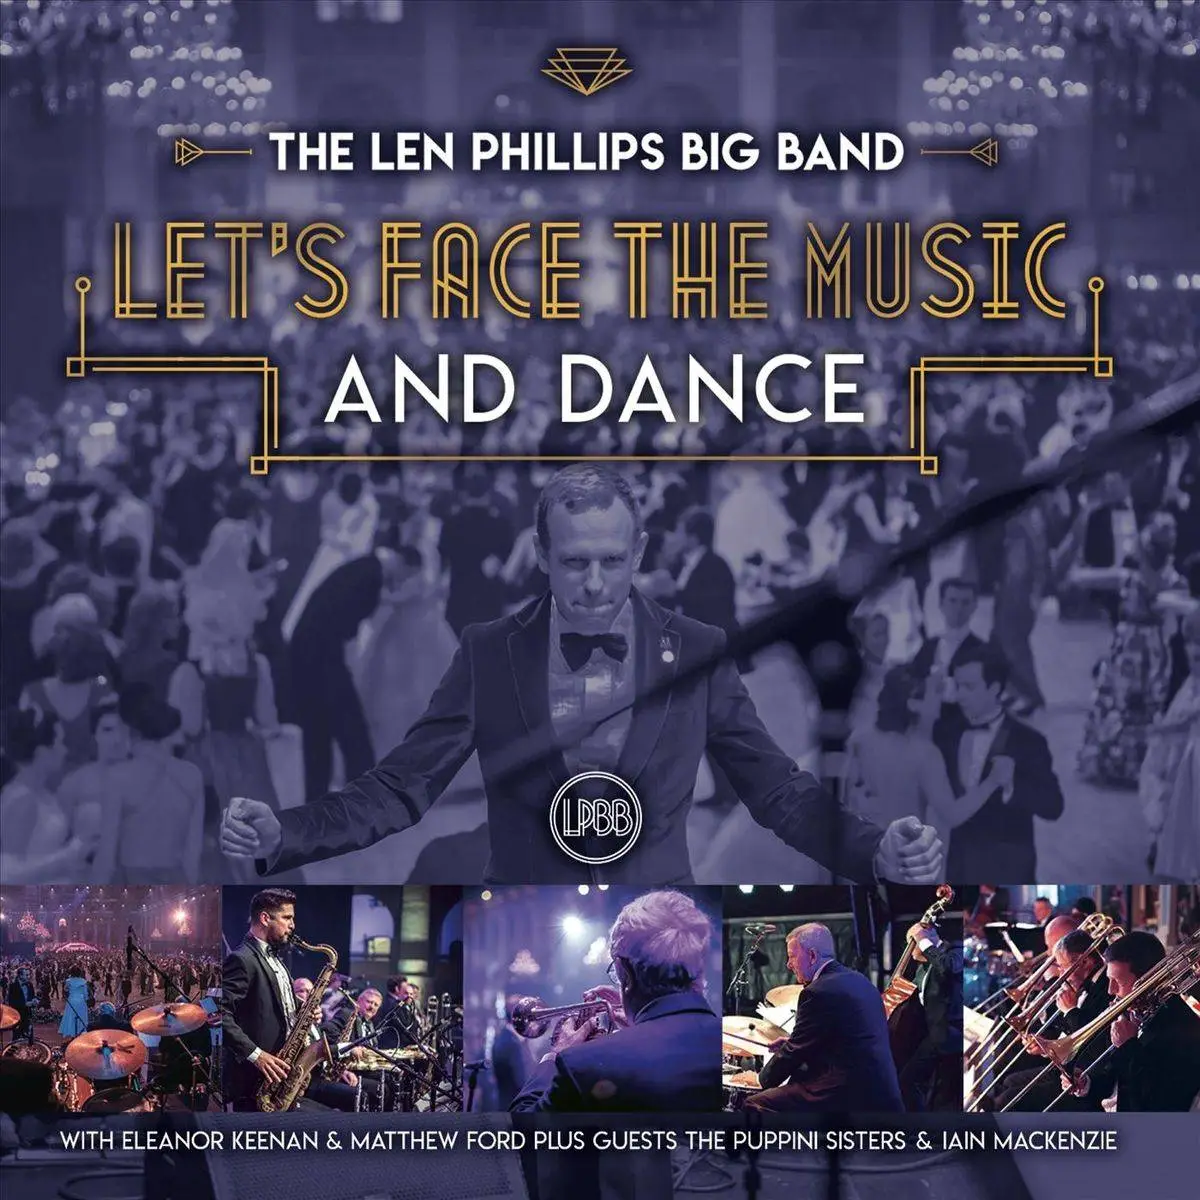 len phillips big band tour